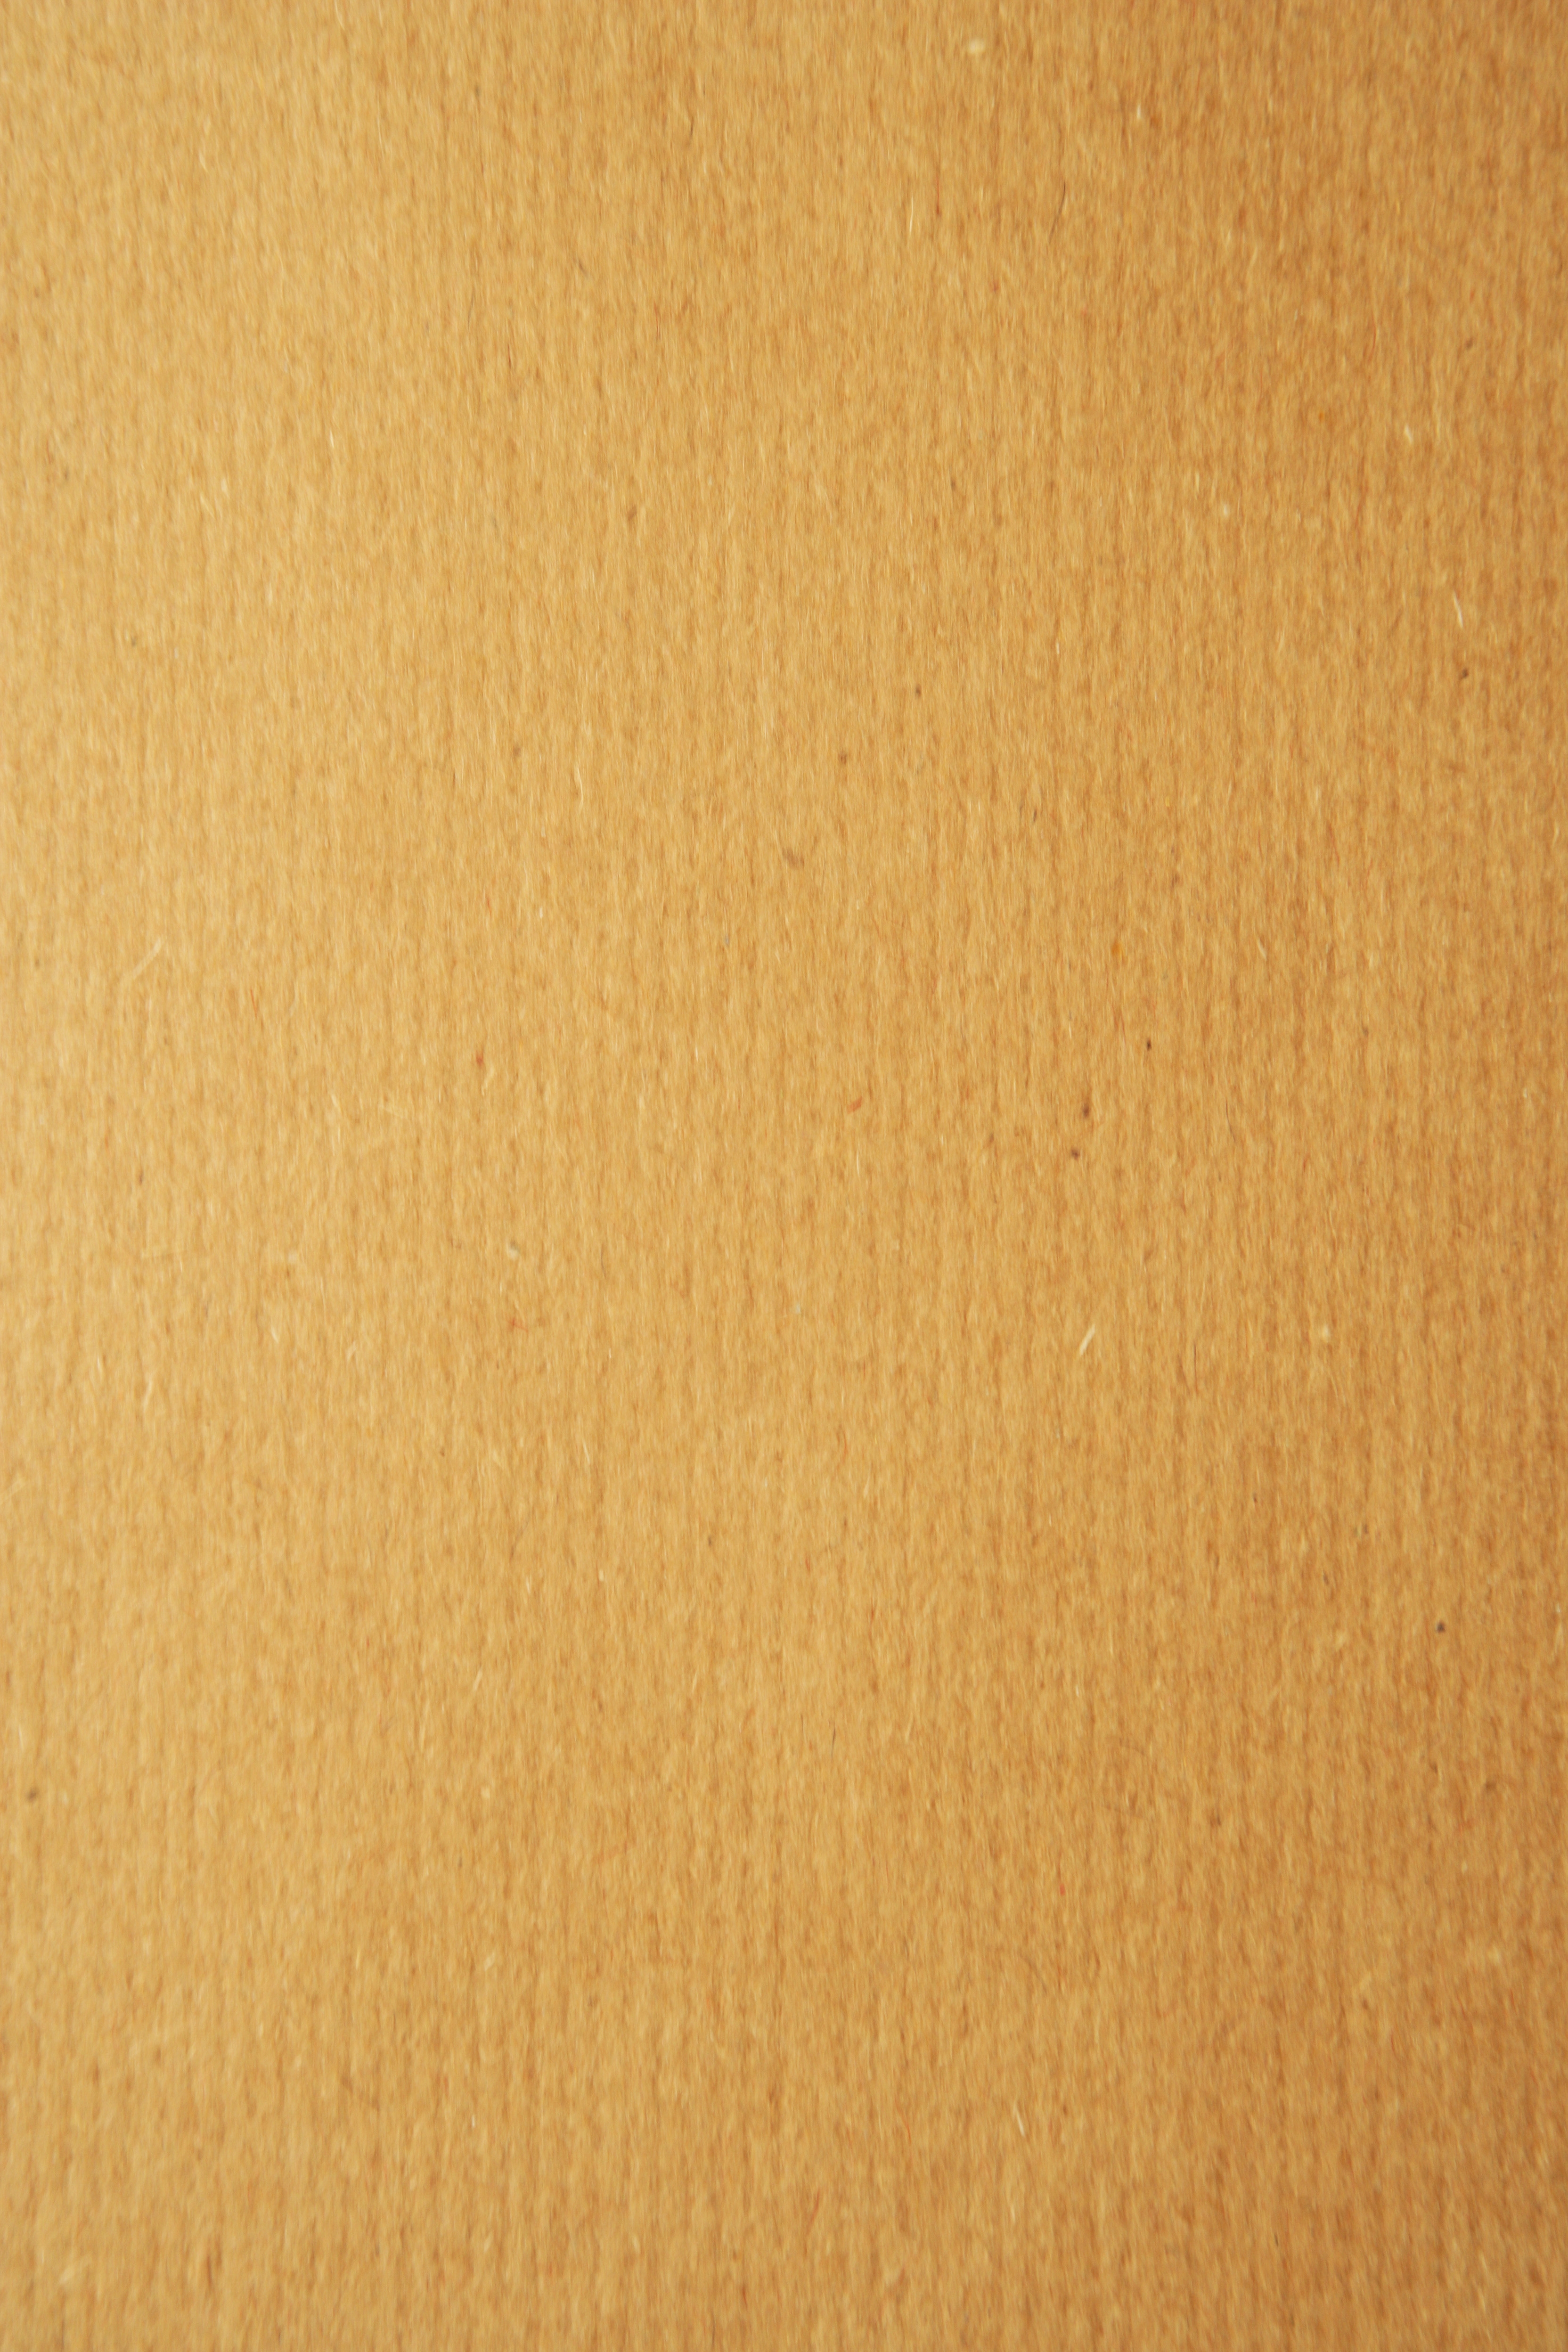 Wrinkled Brown Paper Textures (JPG) Vol. 2